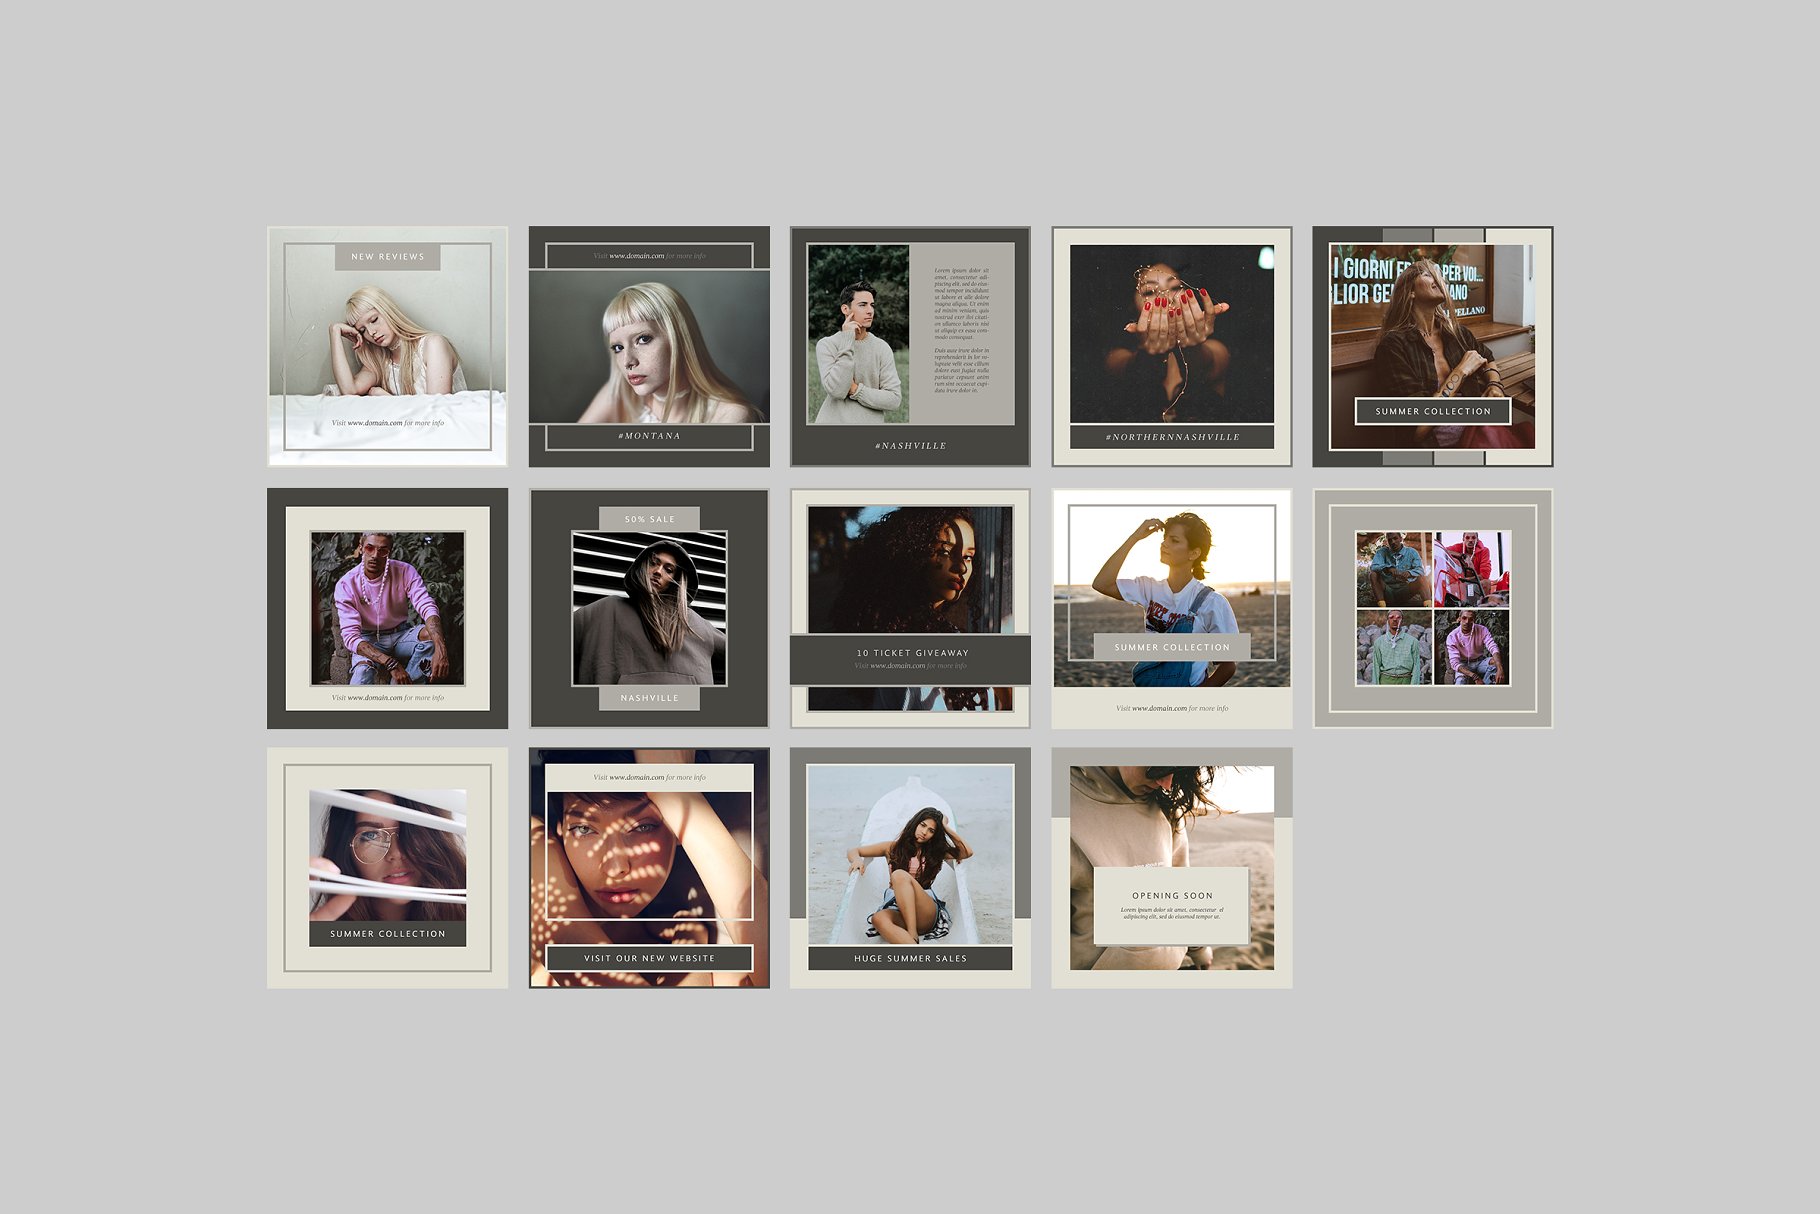 时尚模特摄影主题社交媒体贴图模板大洋岛精选 Nashville Social Media Templates插图6